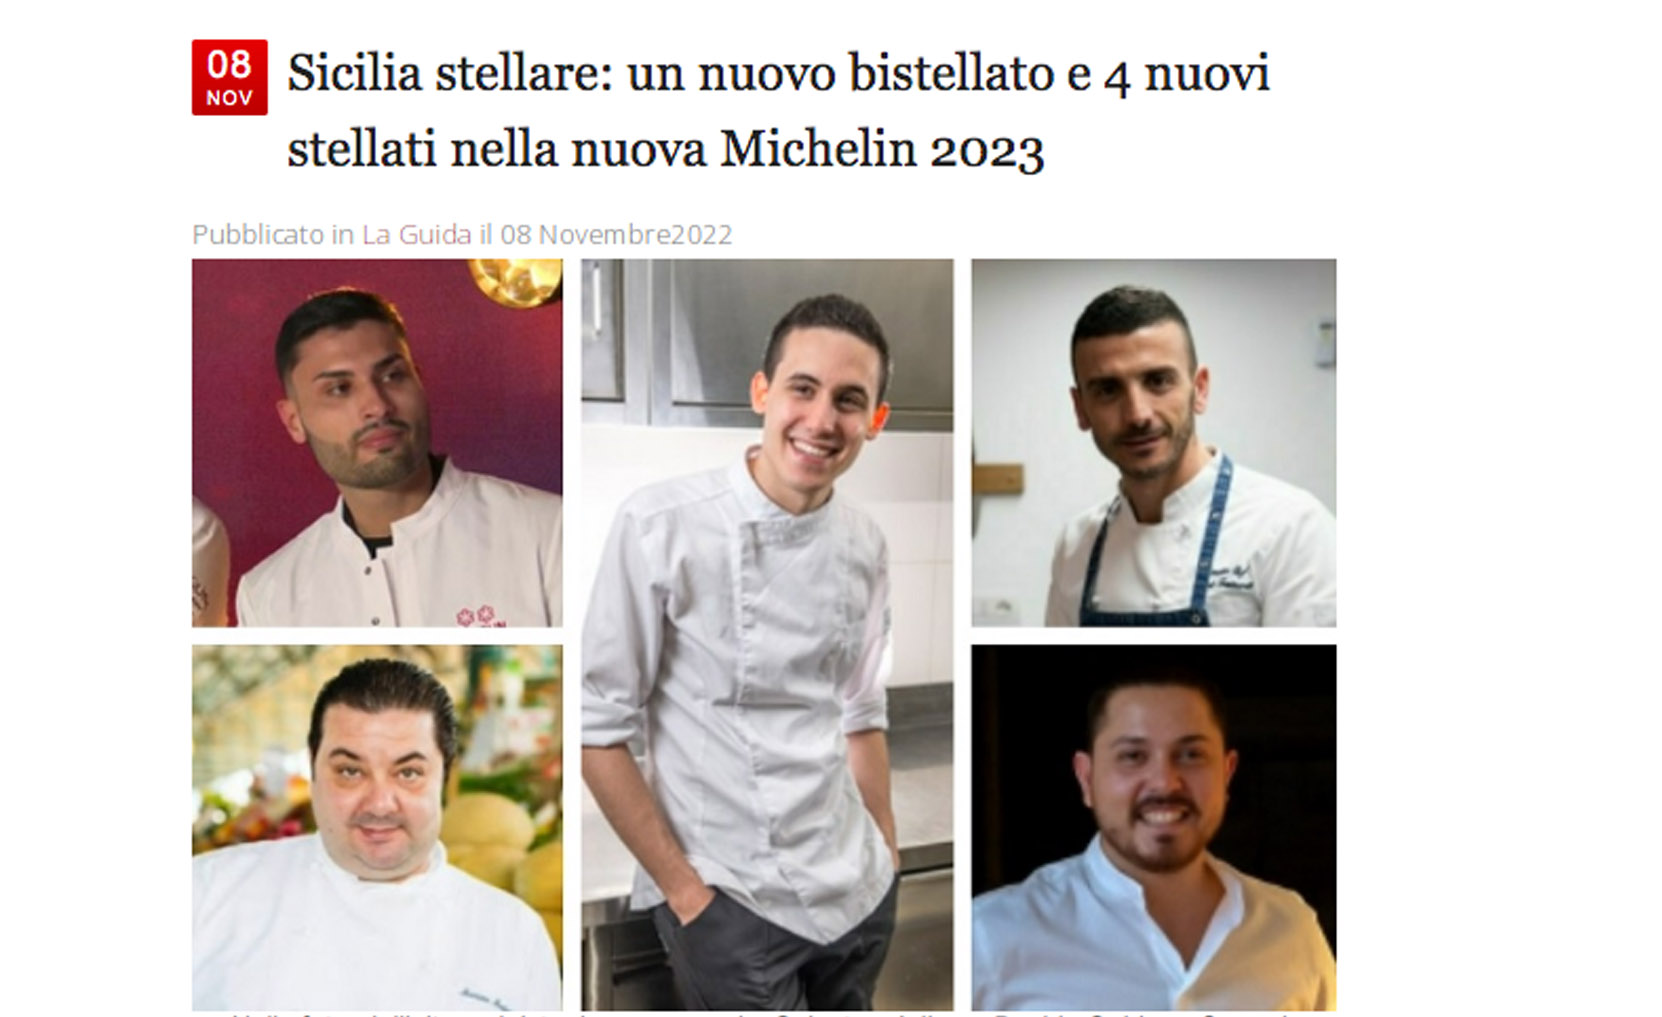 Sicilia stellare: un nuovo bistellato e 4 nuovi stellati nella nuova Michelin 2023